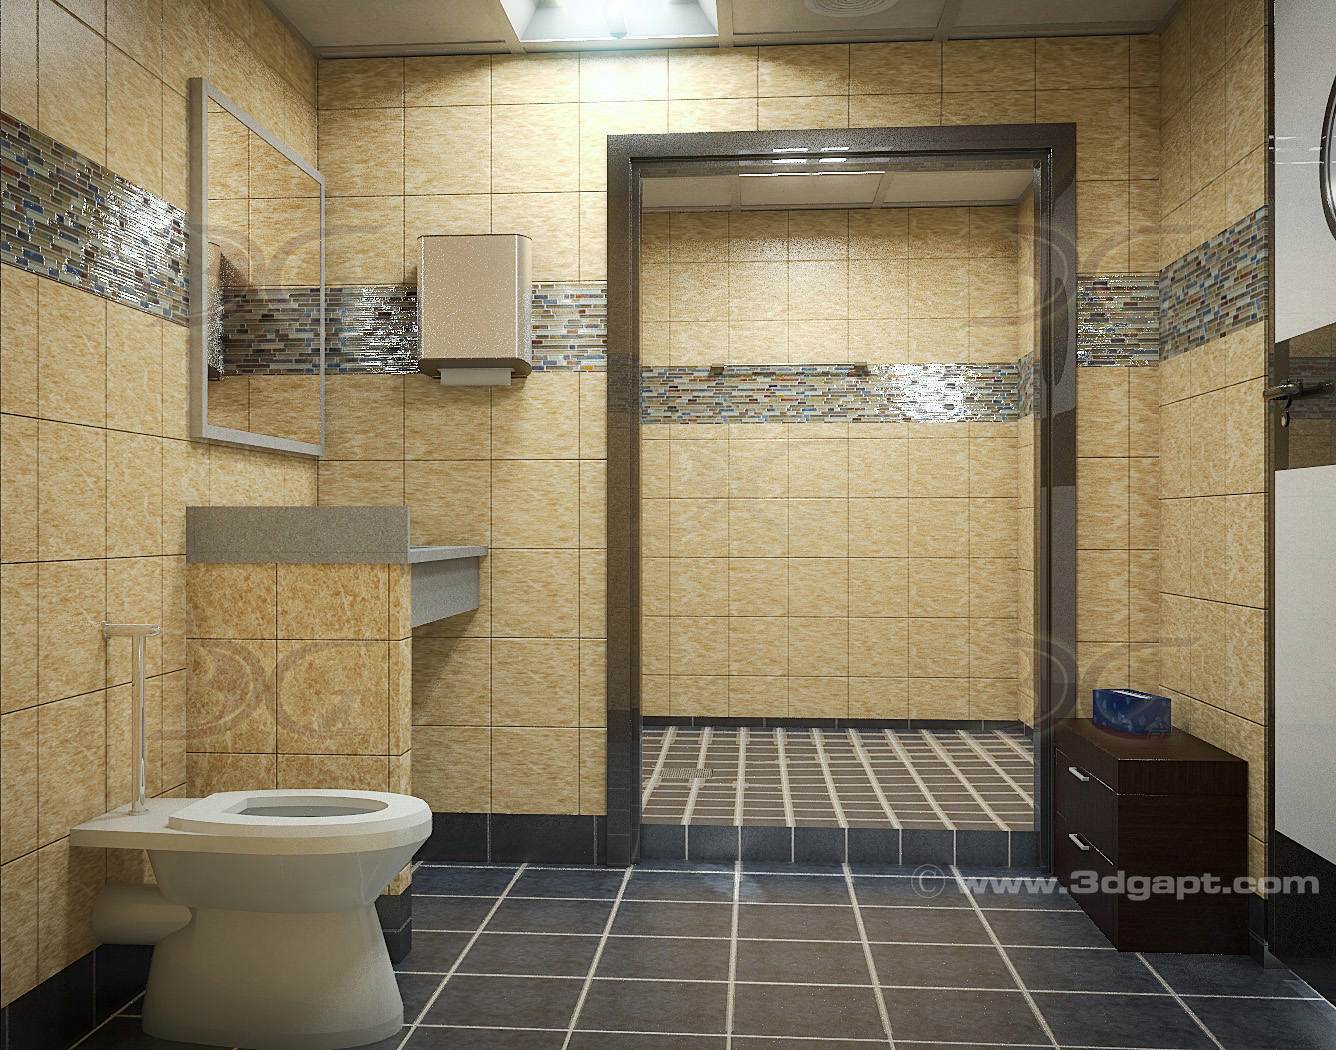 architecture interior container bathrooms0019